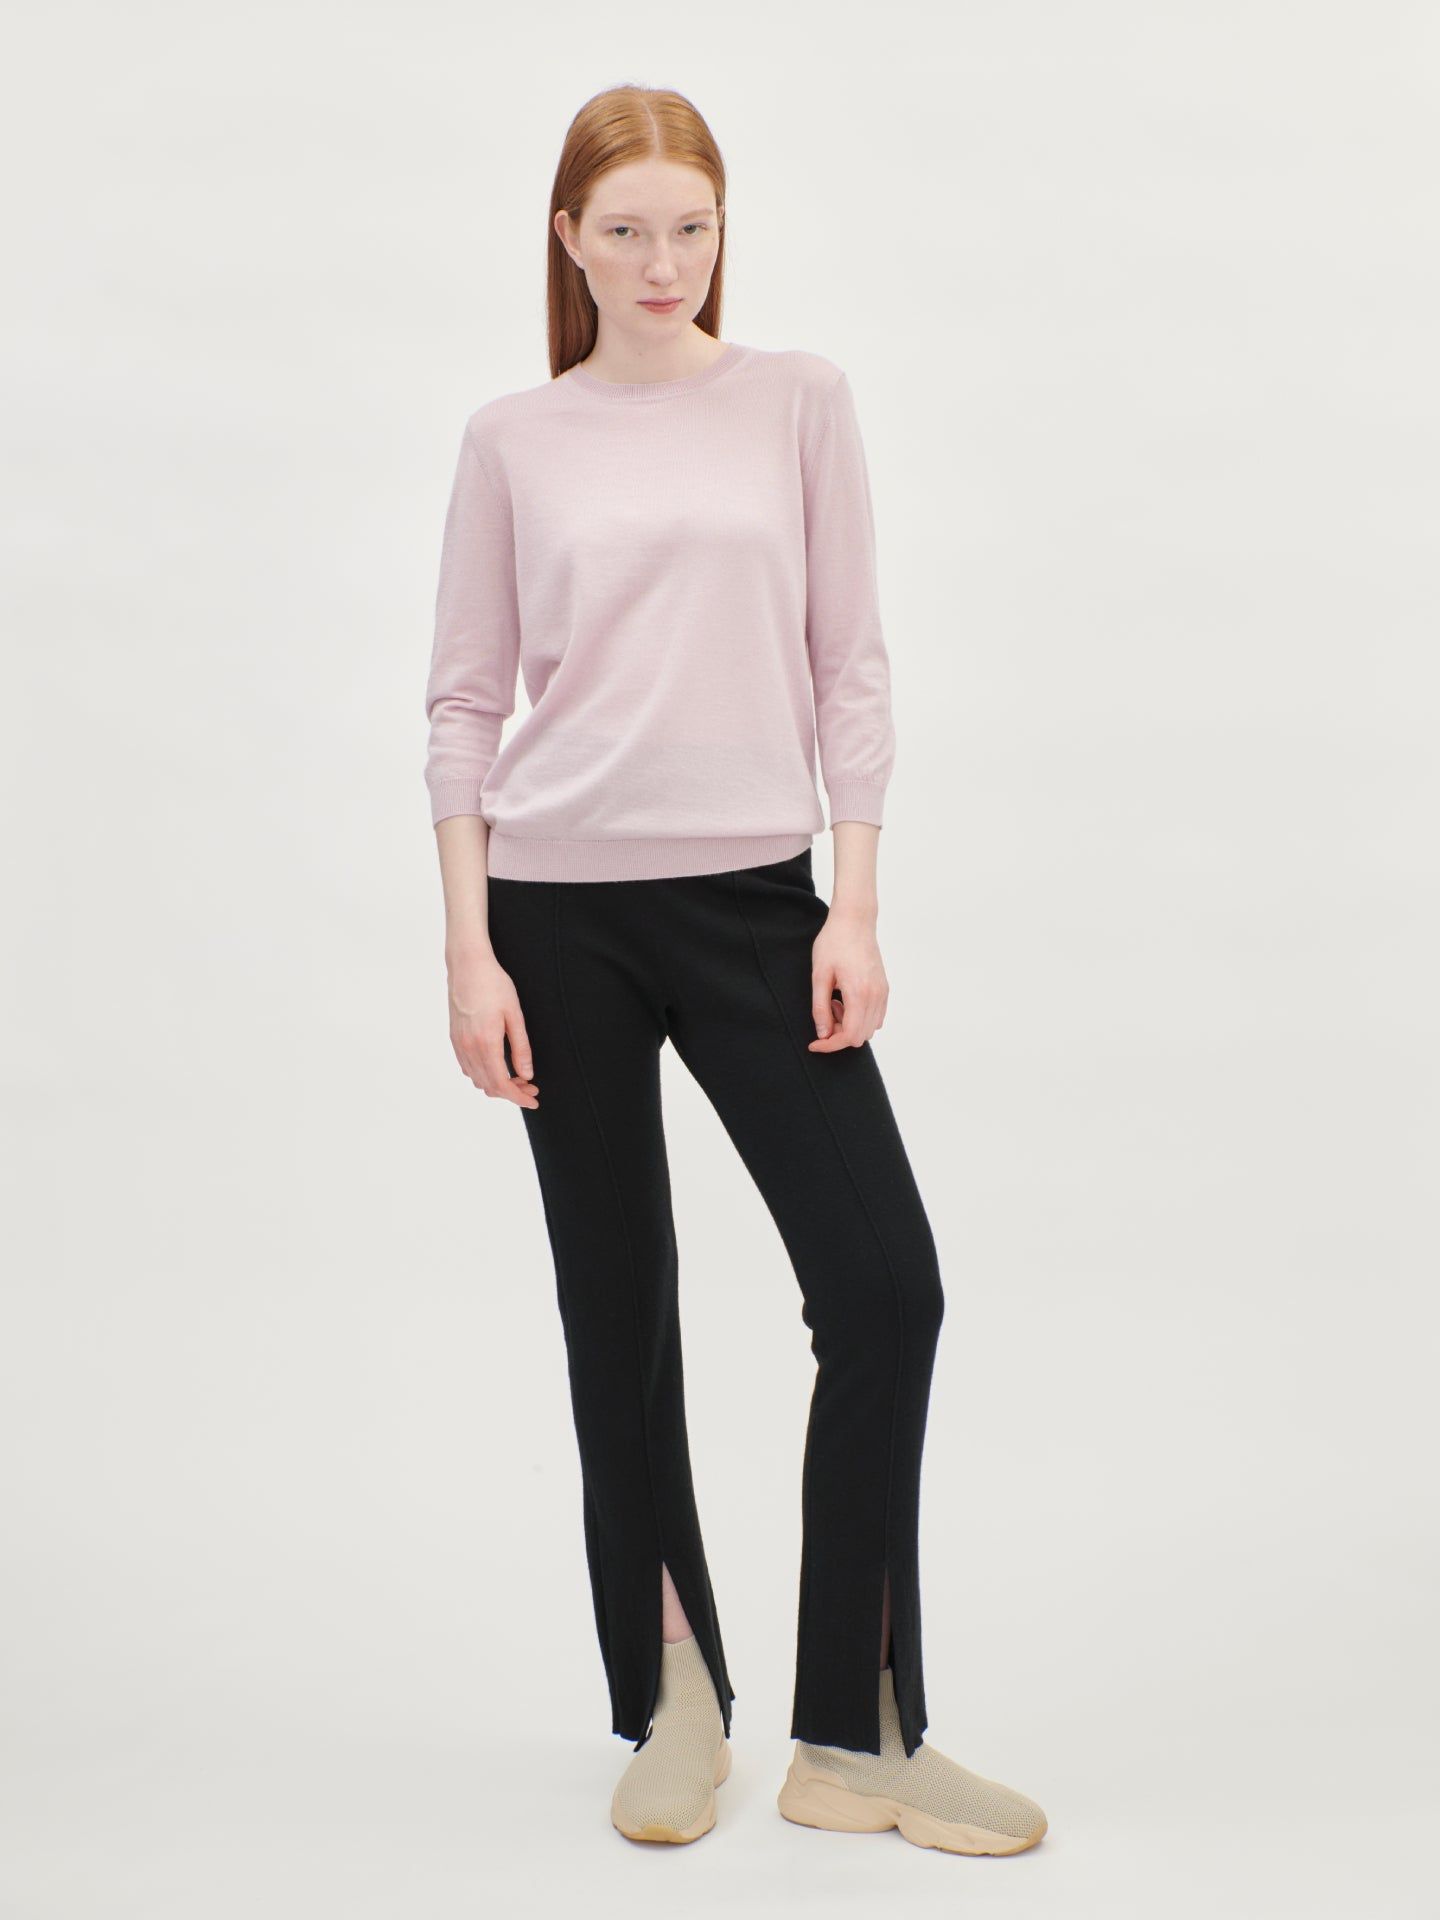 Women's Silk Cashmere Short-Sleeved R-Neck Top Pink Mist - Gobi Cashmere